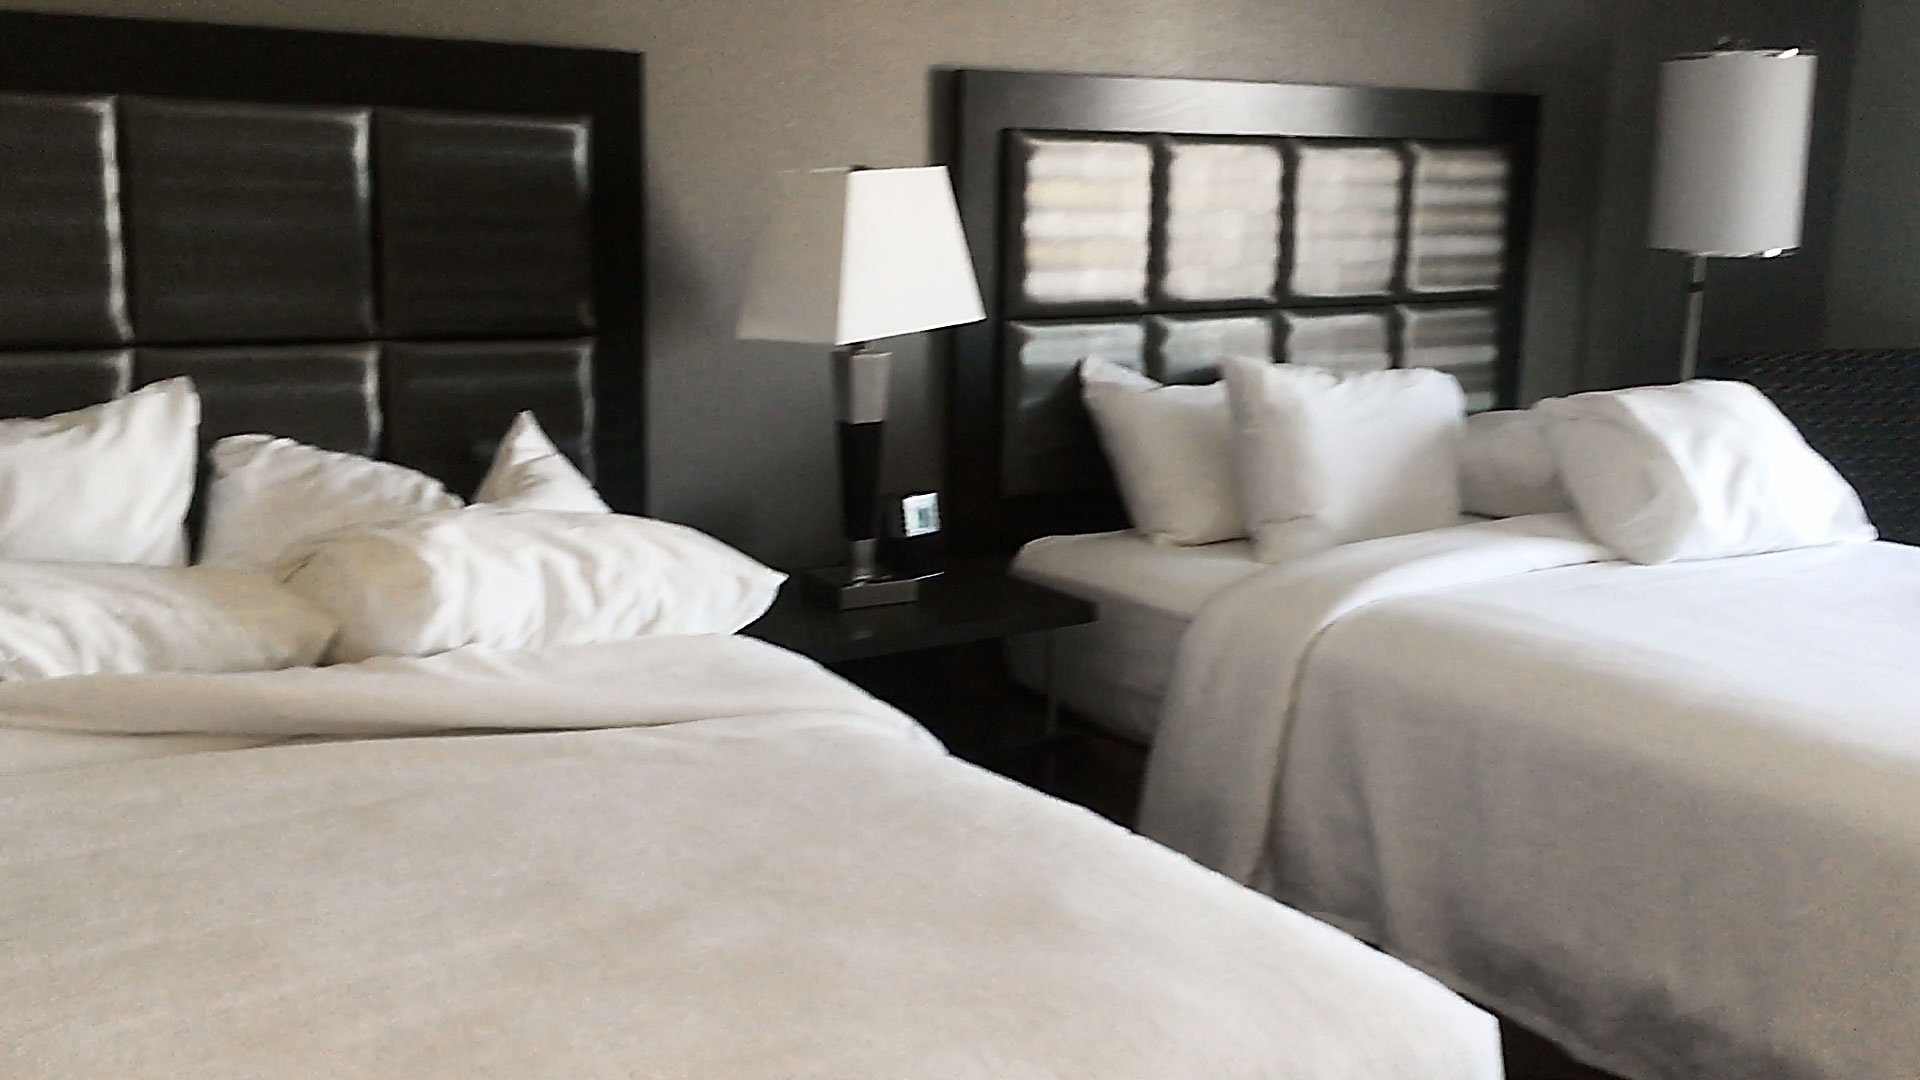 Hotel room 2 Queen Size beds - © TsWISsTER